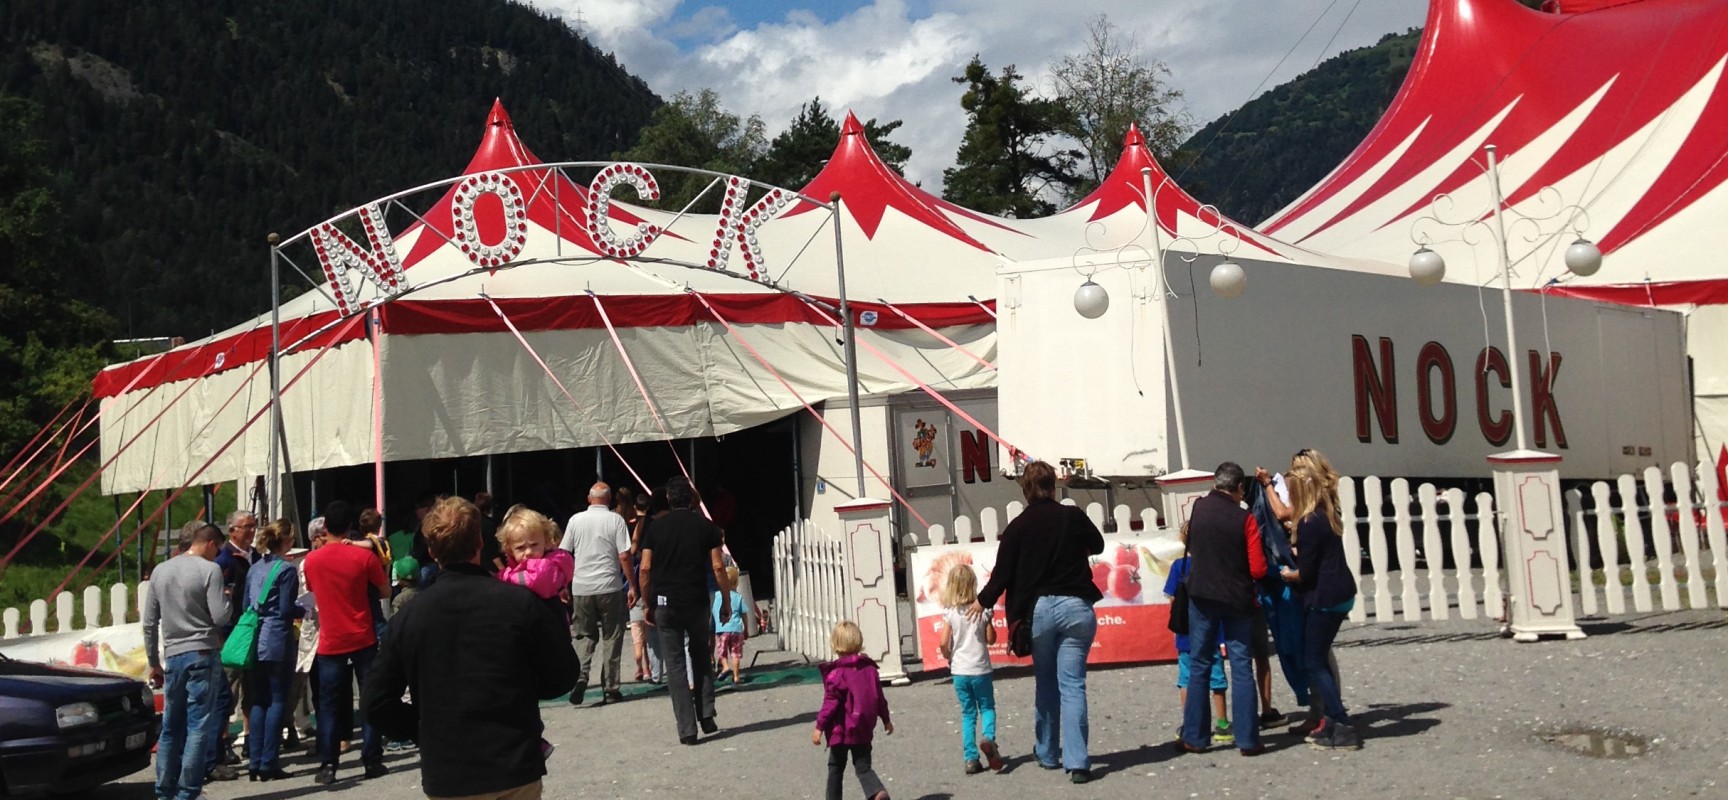 Circus Nock heute in Cazis